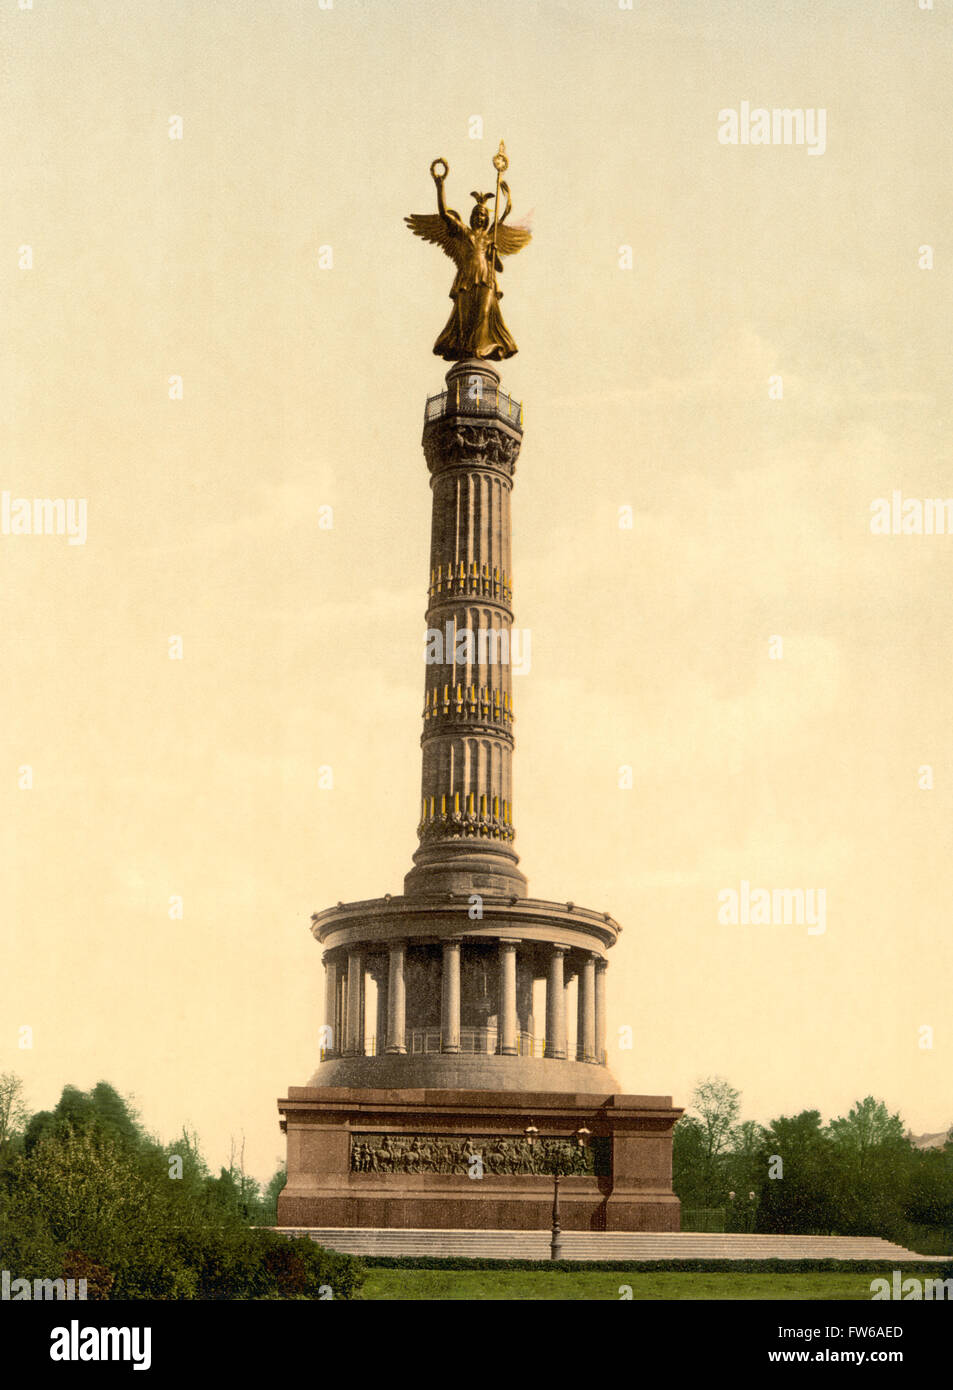 Siegessäule, Berlin, Deutschland, Photochrome Print, um 1900 Stockfoto